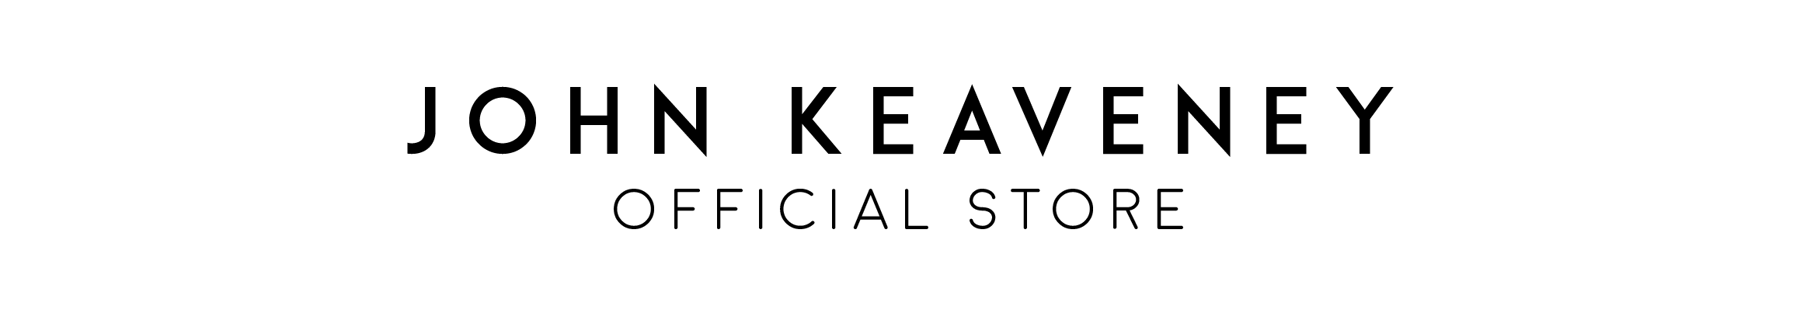 John Keaveney Official Store